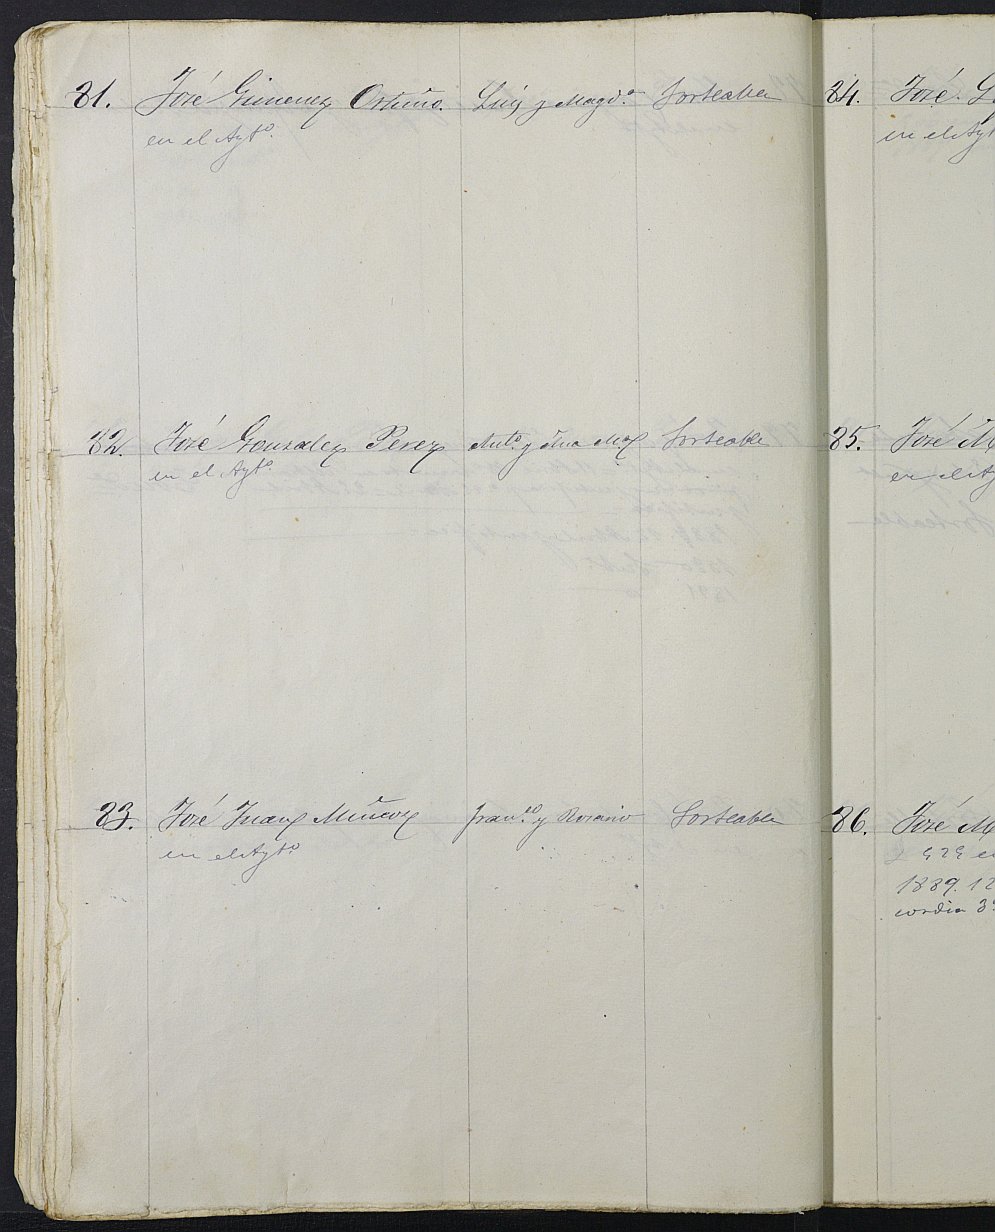 Relación de individuos declarados soldados e ingresados en Caja del Ayuntamiento de Yecla de 1888.